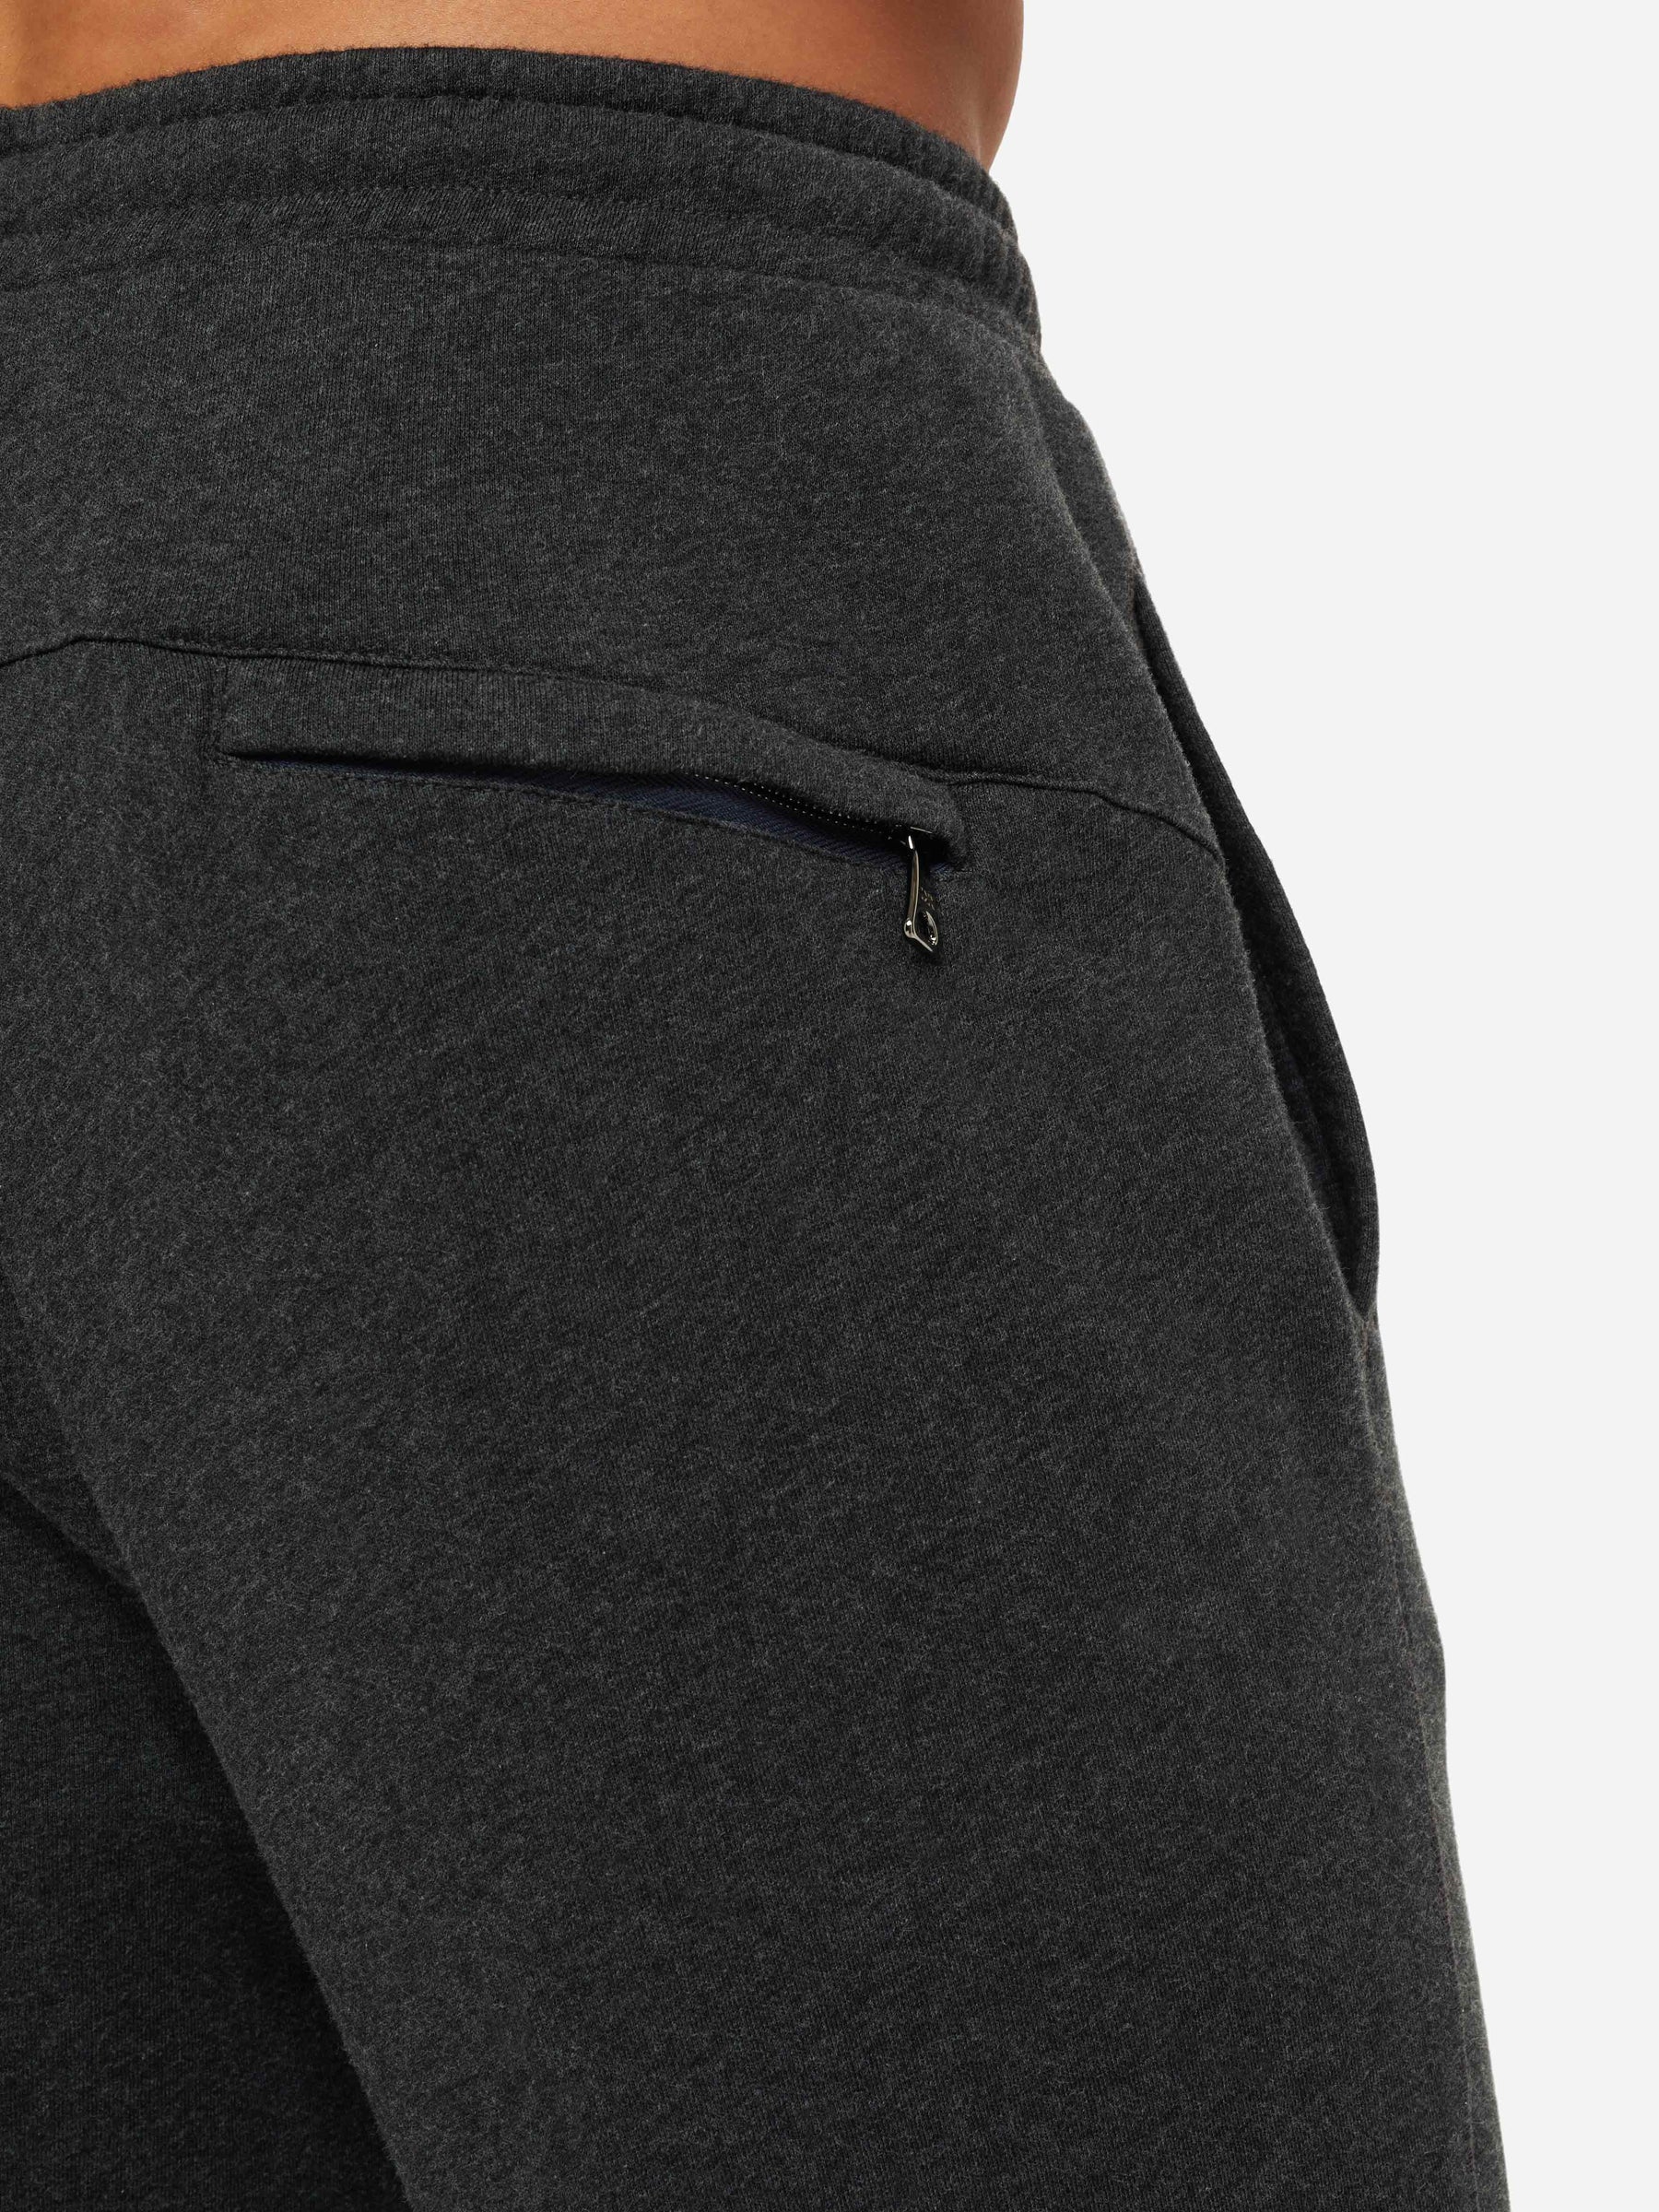 Men's Sweatpants Quinn Cotton Modal Charcoal